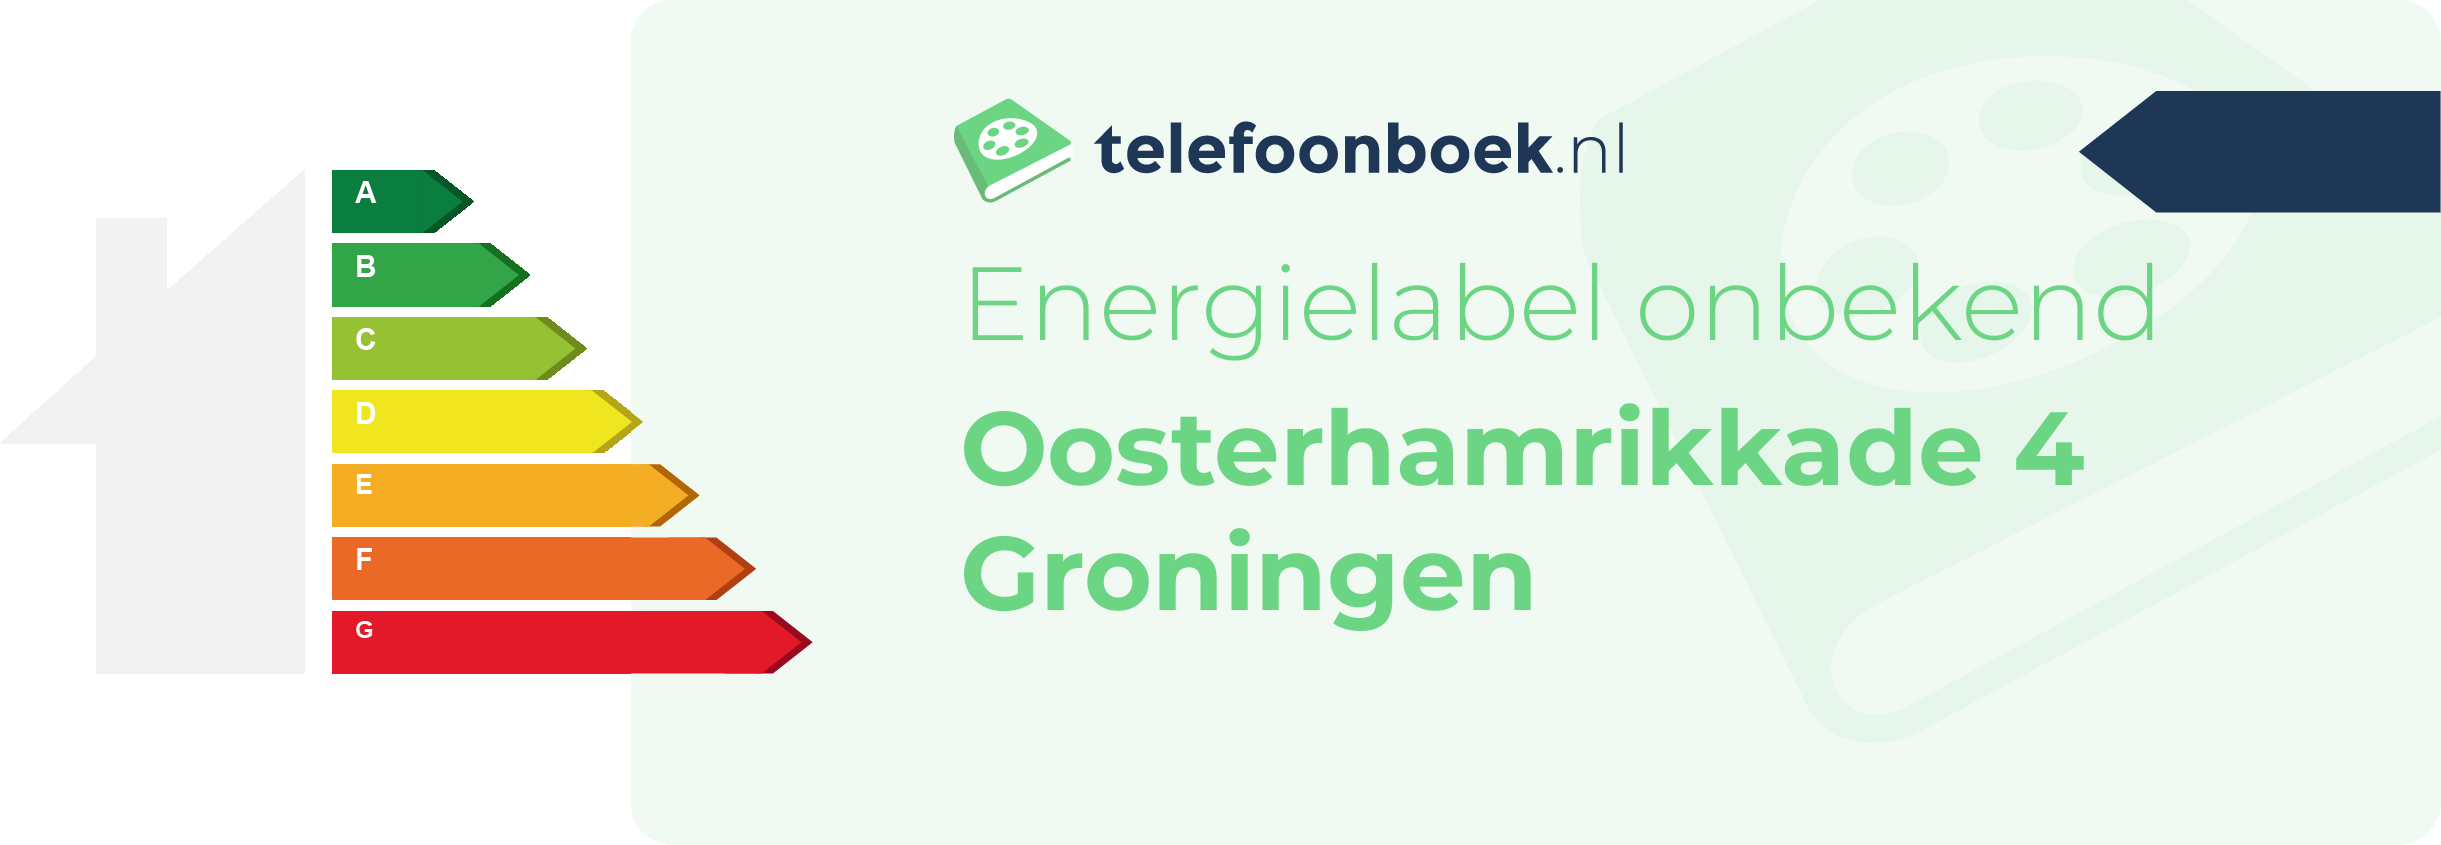 Energielabel Oosterhamrikkade 4 Groningen